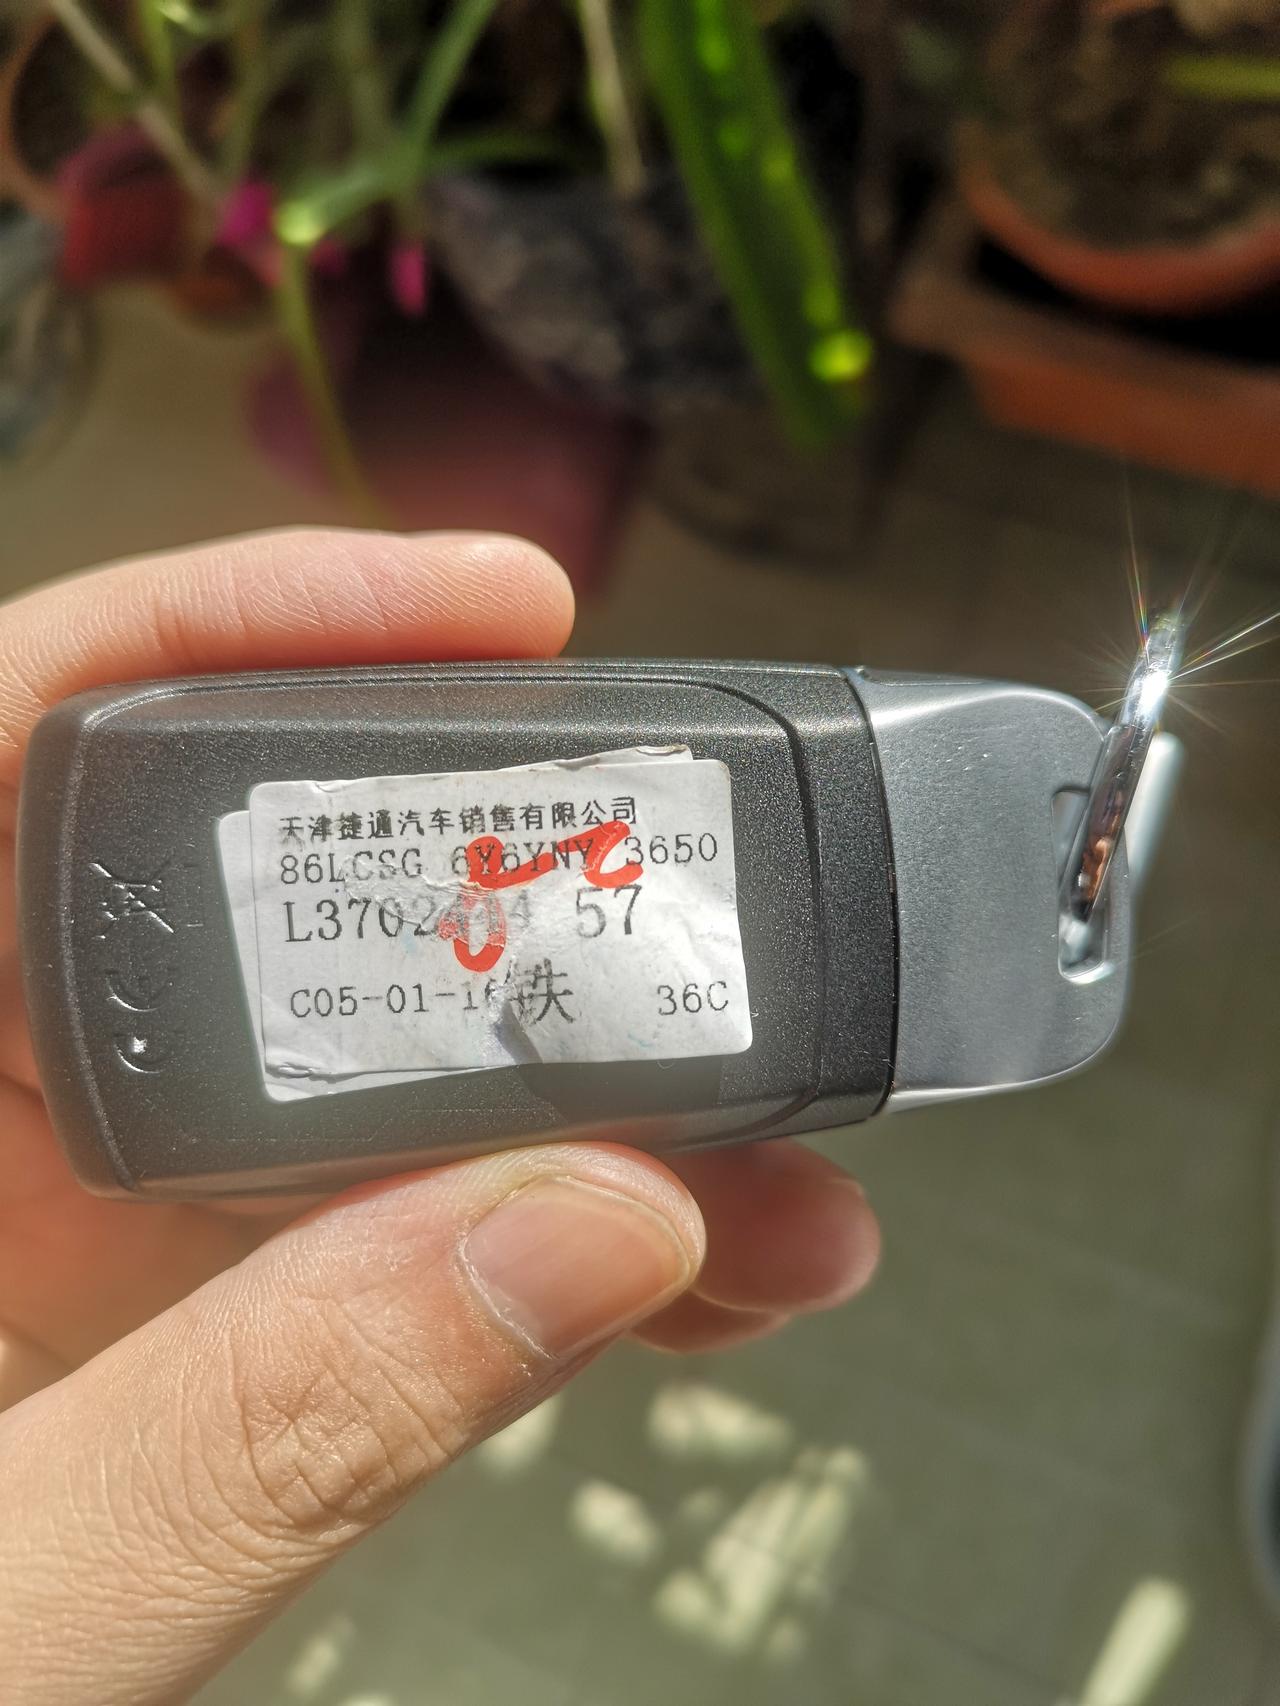 奥迪A4L 12月浙江4S店提车的（铭牌显示11月19日生产），偶然揭开钥匙第二层贴纸，写的是天津一家汽贸，正常吗？